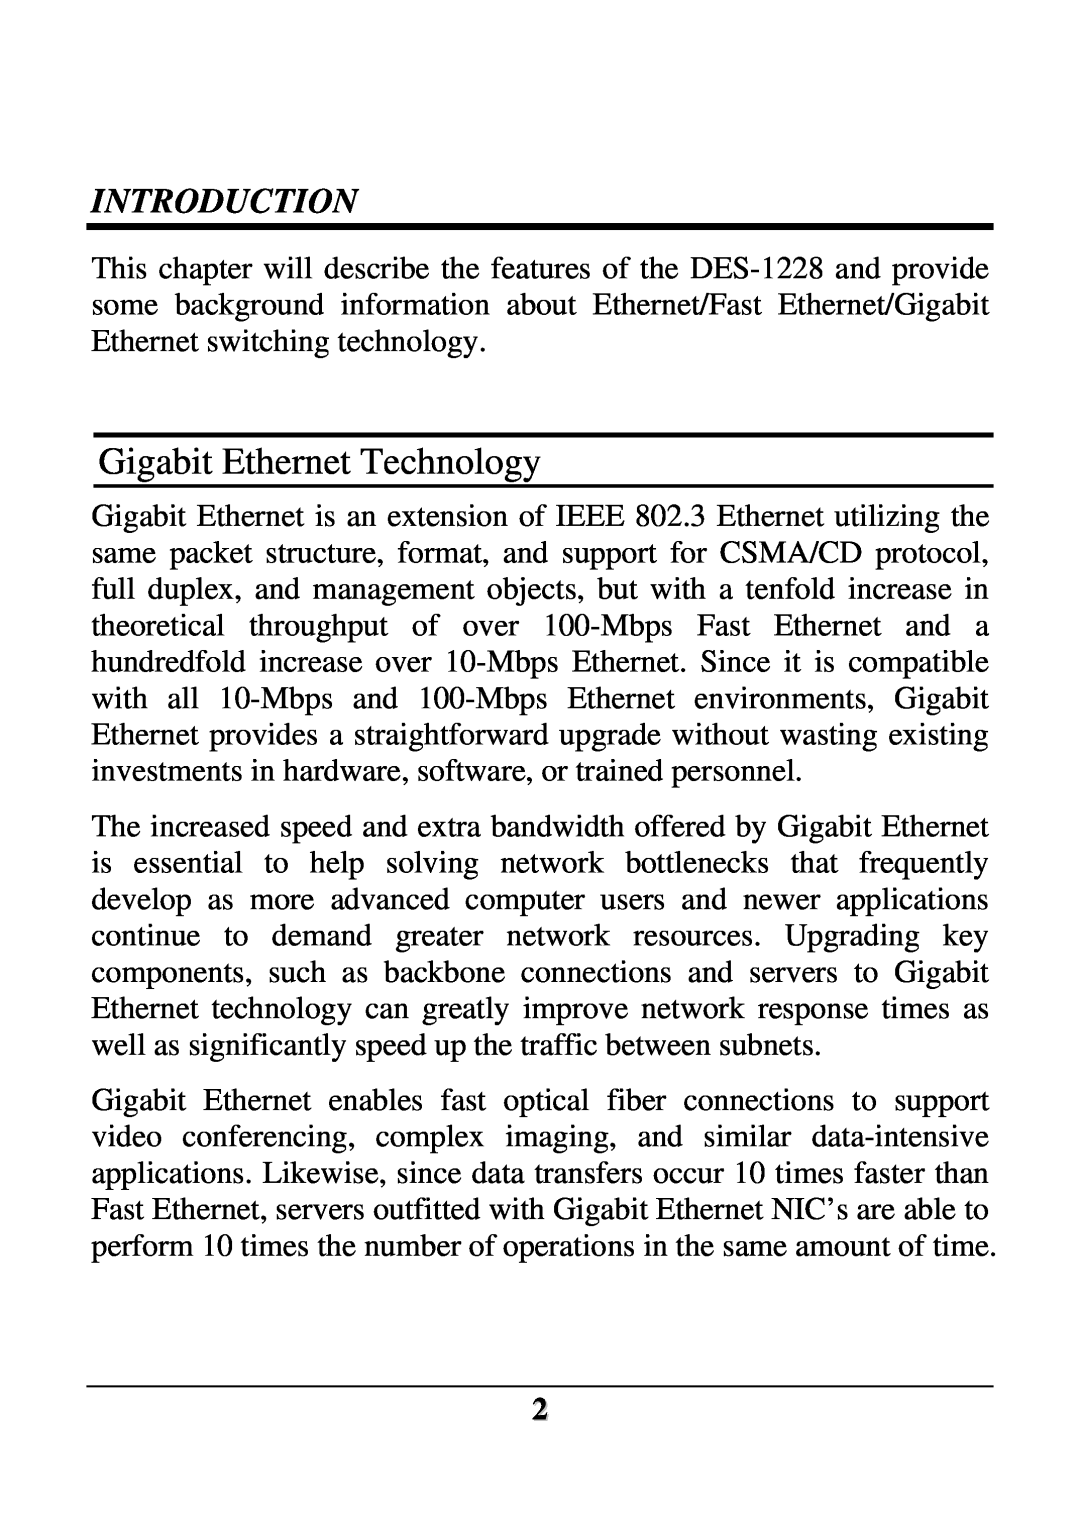 D-Link DES-1228 user manual Gigabit Ethernet Technology, Introduction 